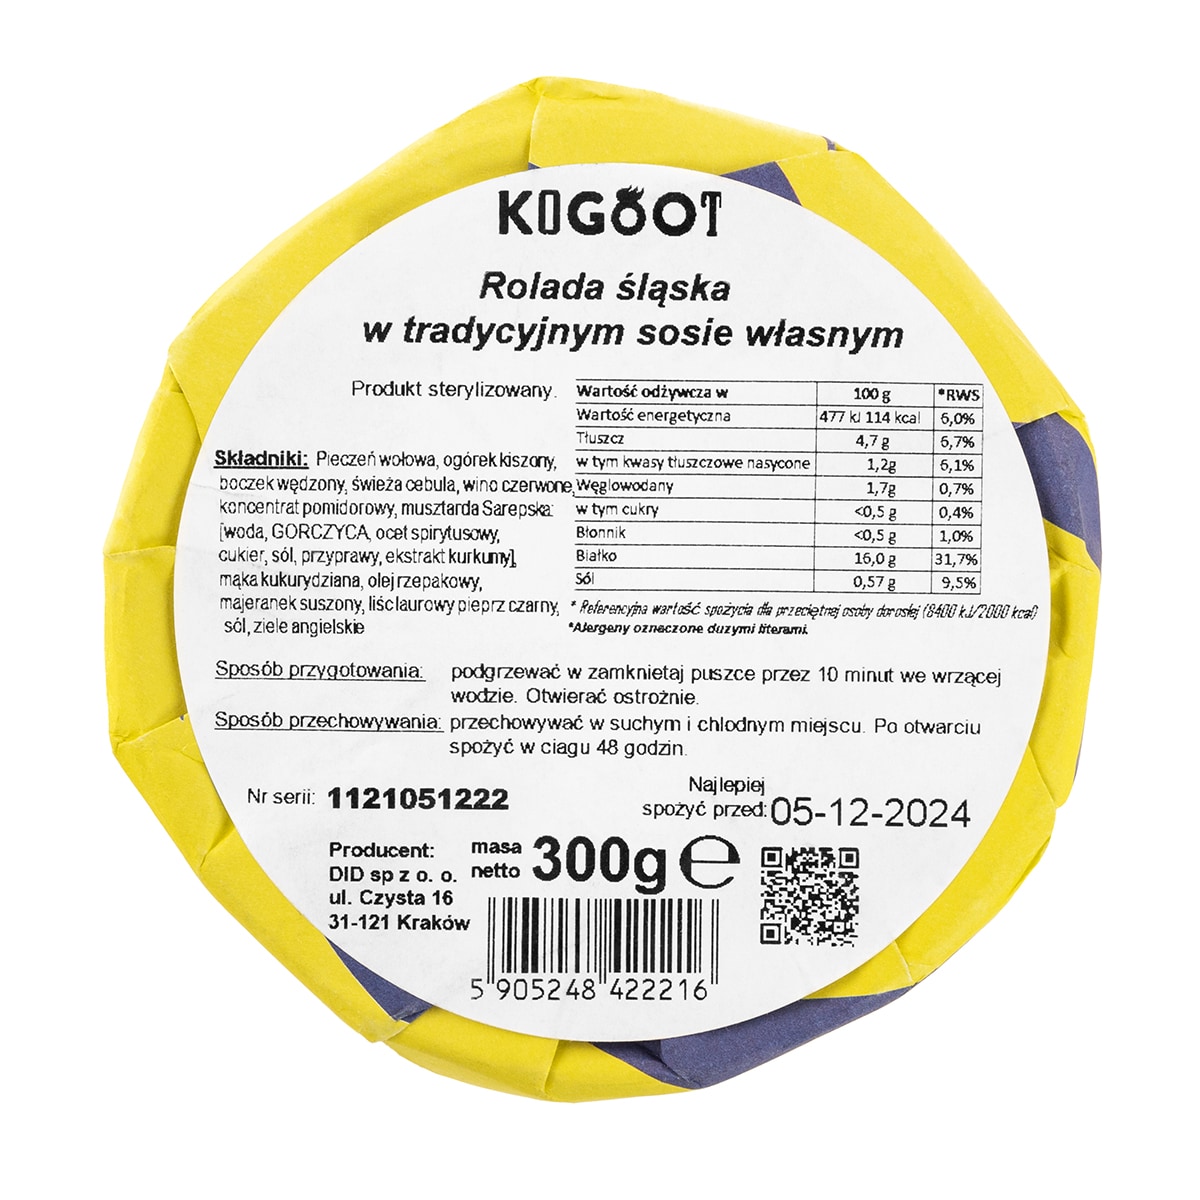 Консервовані продукти Kogoot - Сілезький рулет у традиційному власному соусі 300 г